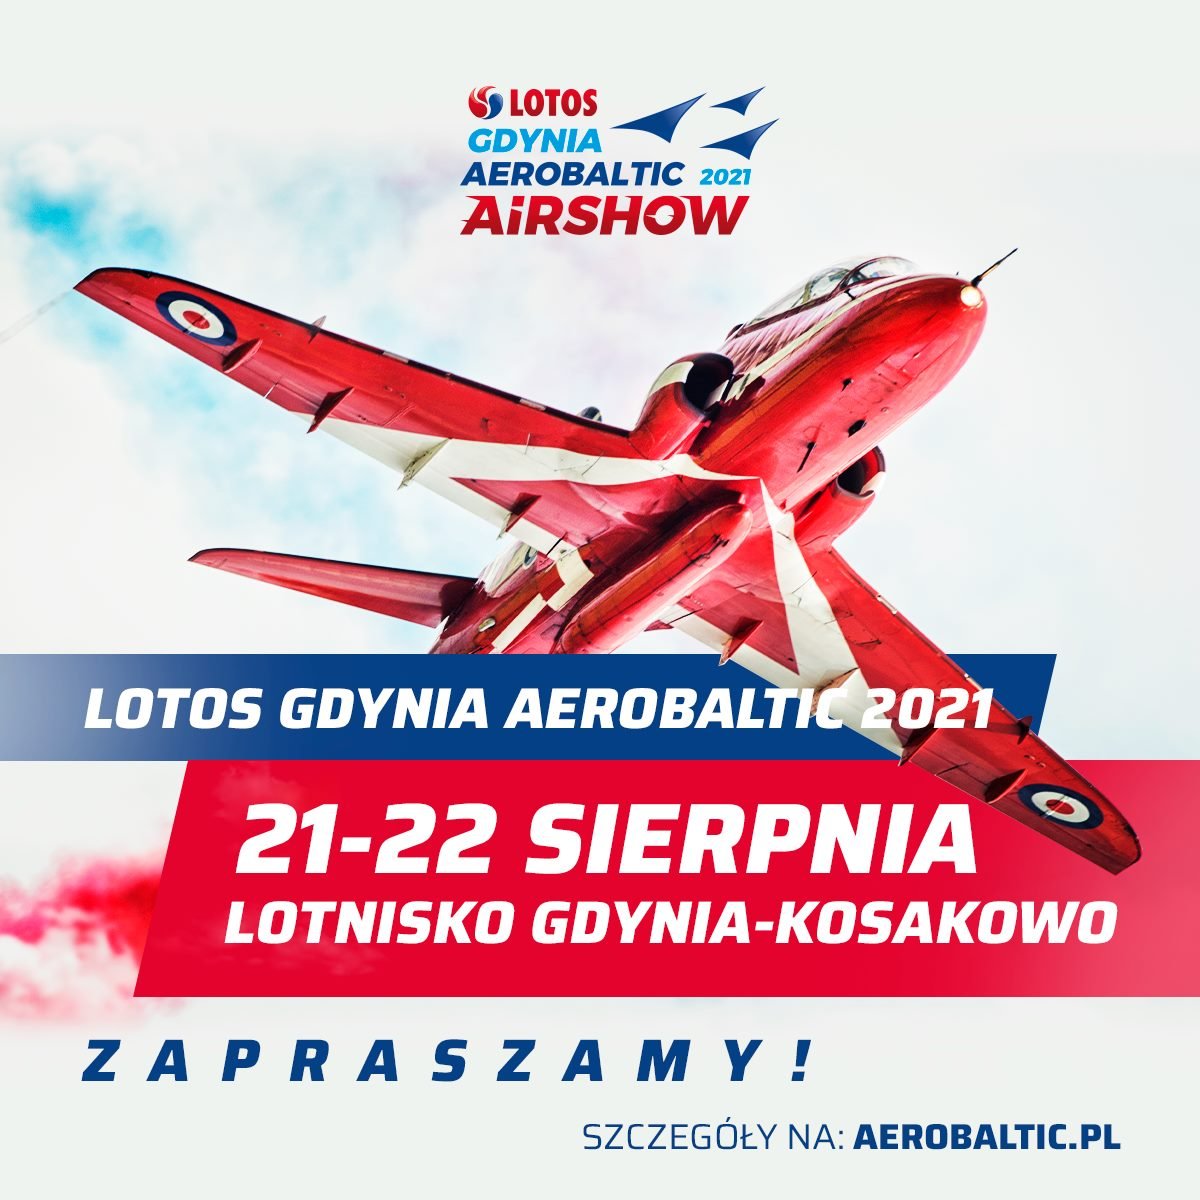 LOTOS Gdynia Aerobaltic odbędzie się w dniach 21-22 sierpnia 2021 r.